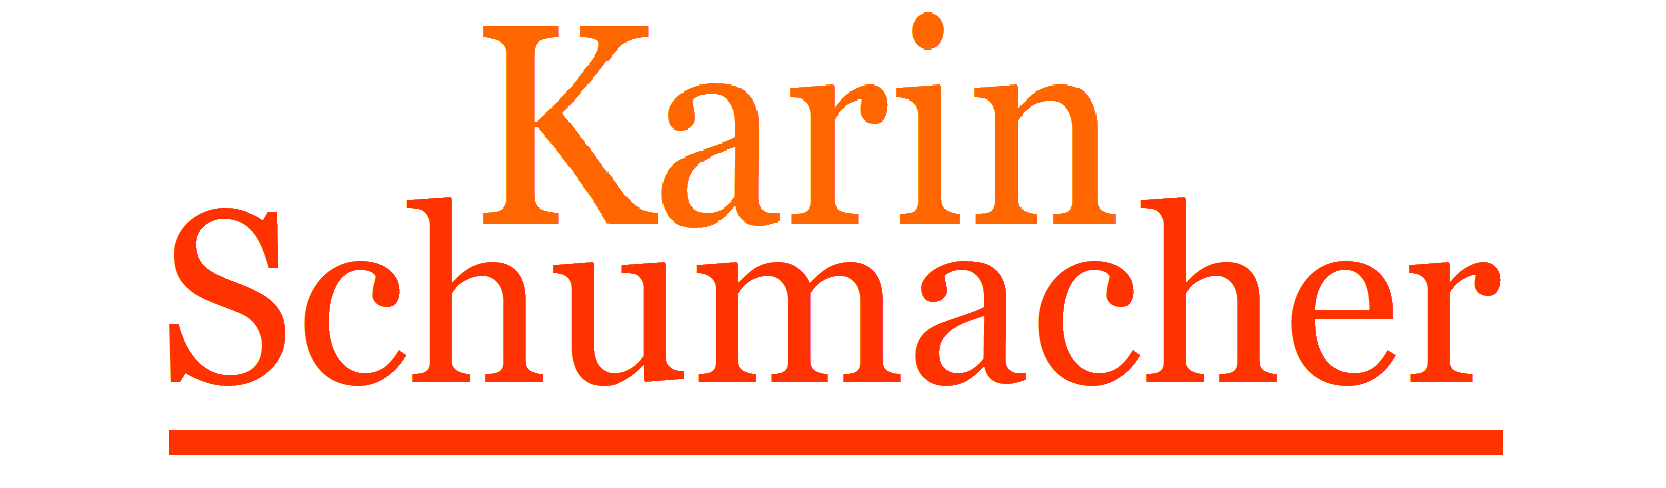 Karin Schumacher Haiterbach Kontakt